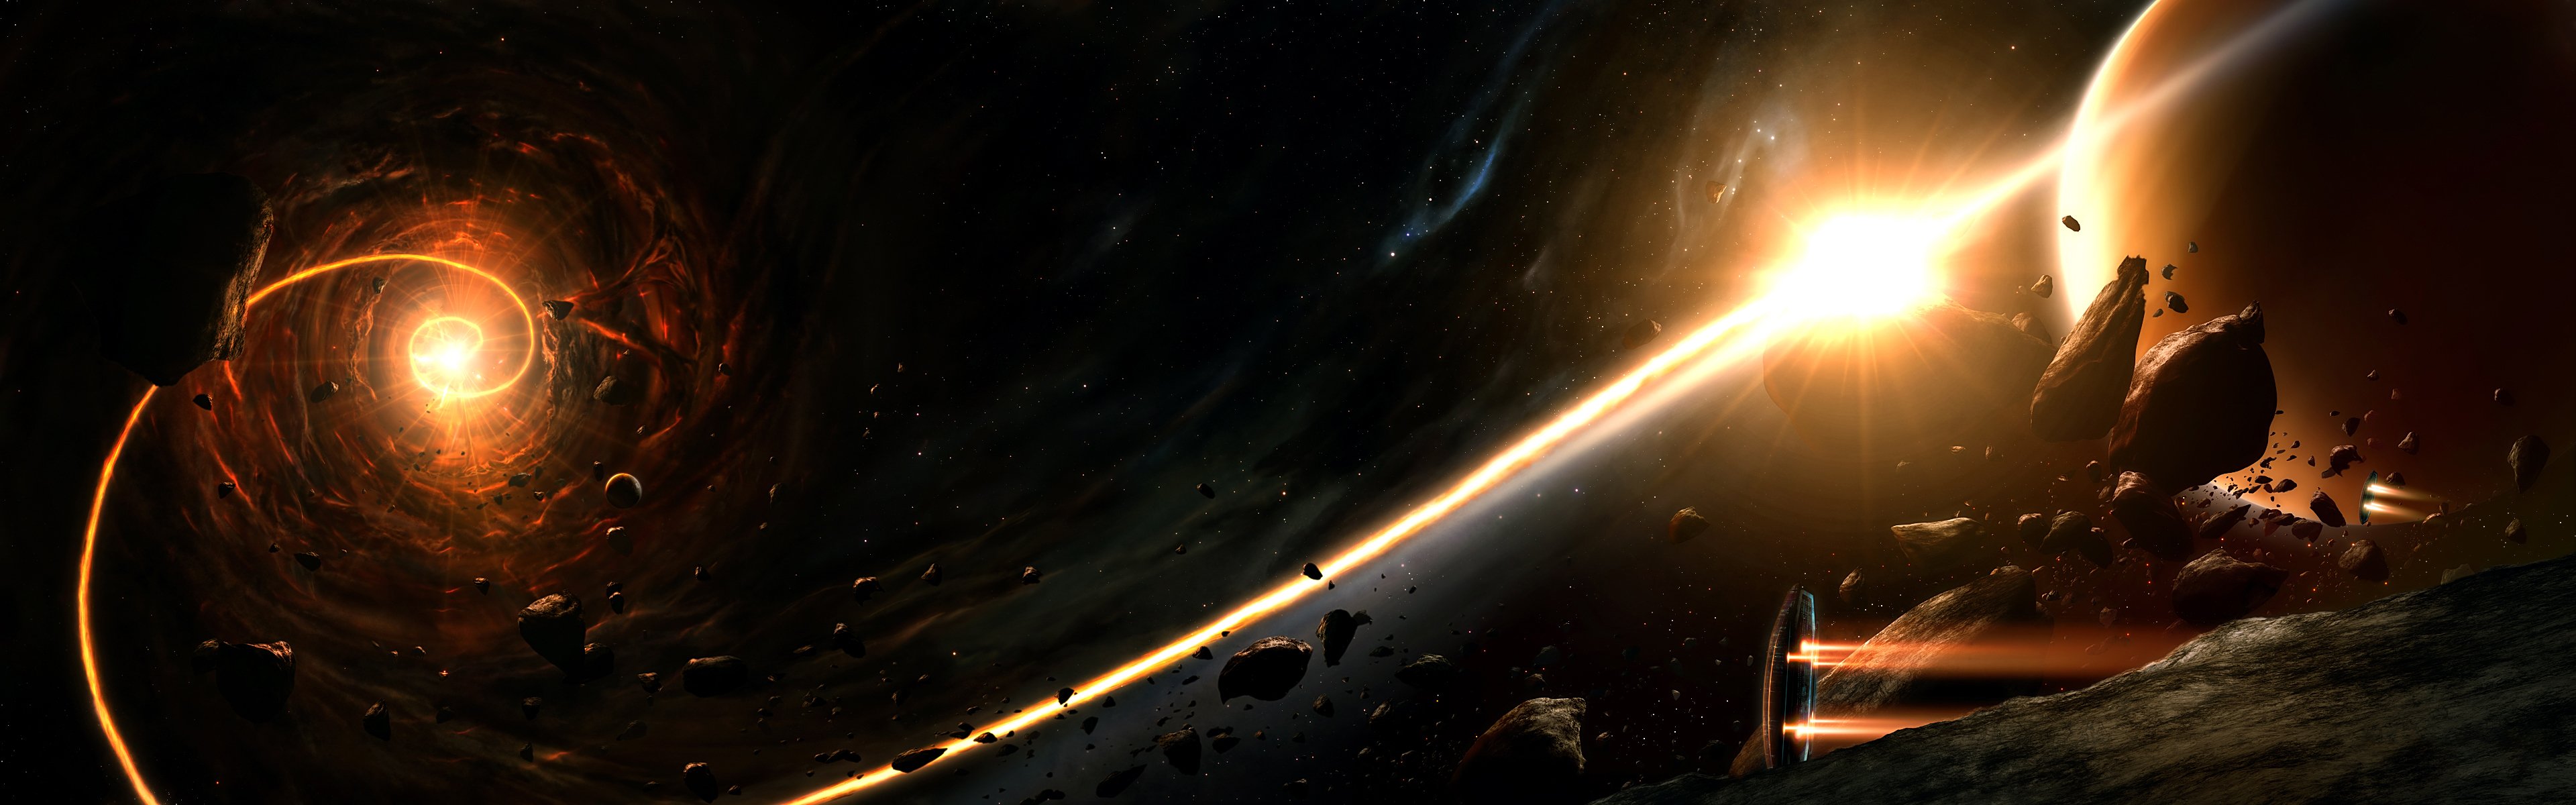 галактика звезды планеты корабль черная дыра огненный шлейф астероиды